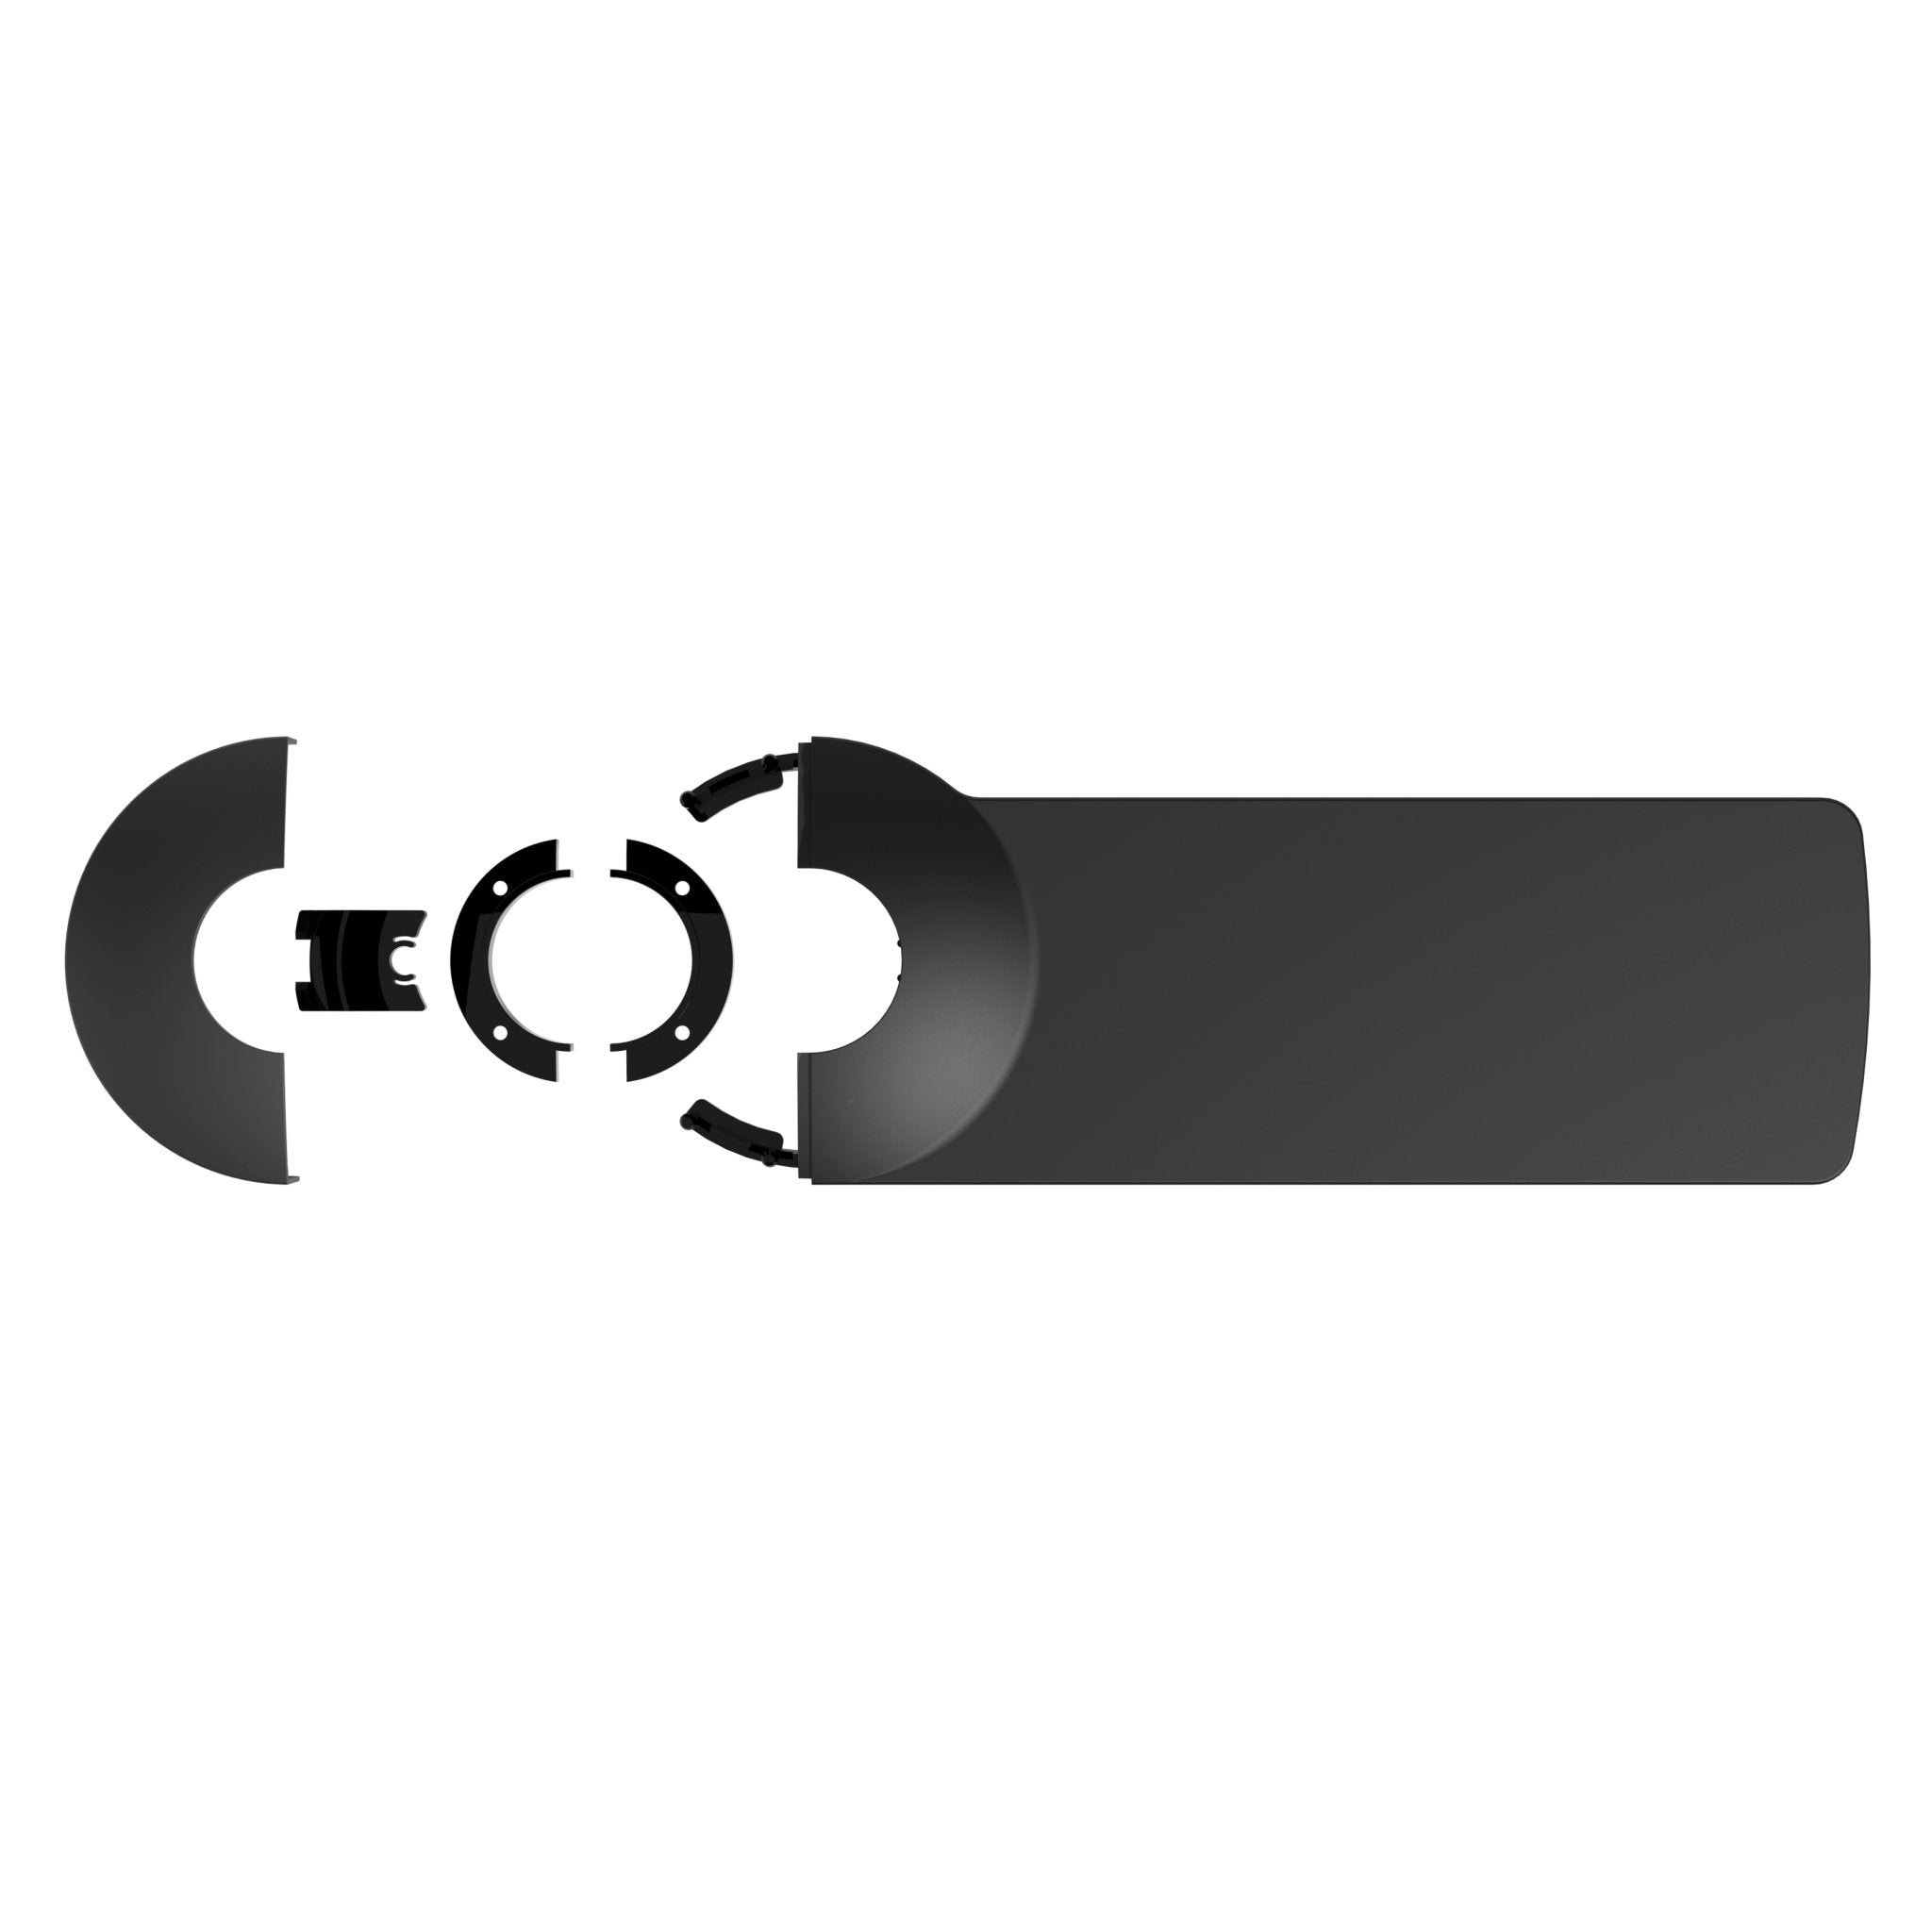 Instructie monteren van de zwarte USB-C docking station EUR uit de Viewlite collectie van Dataflex